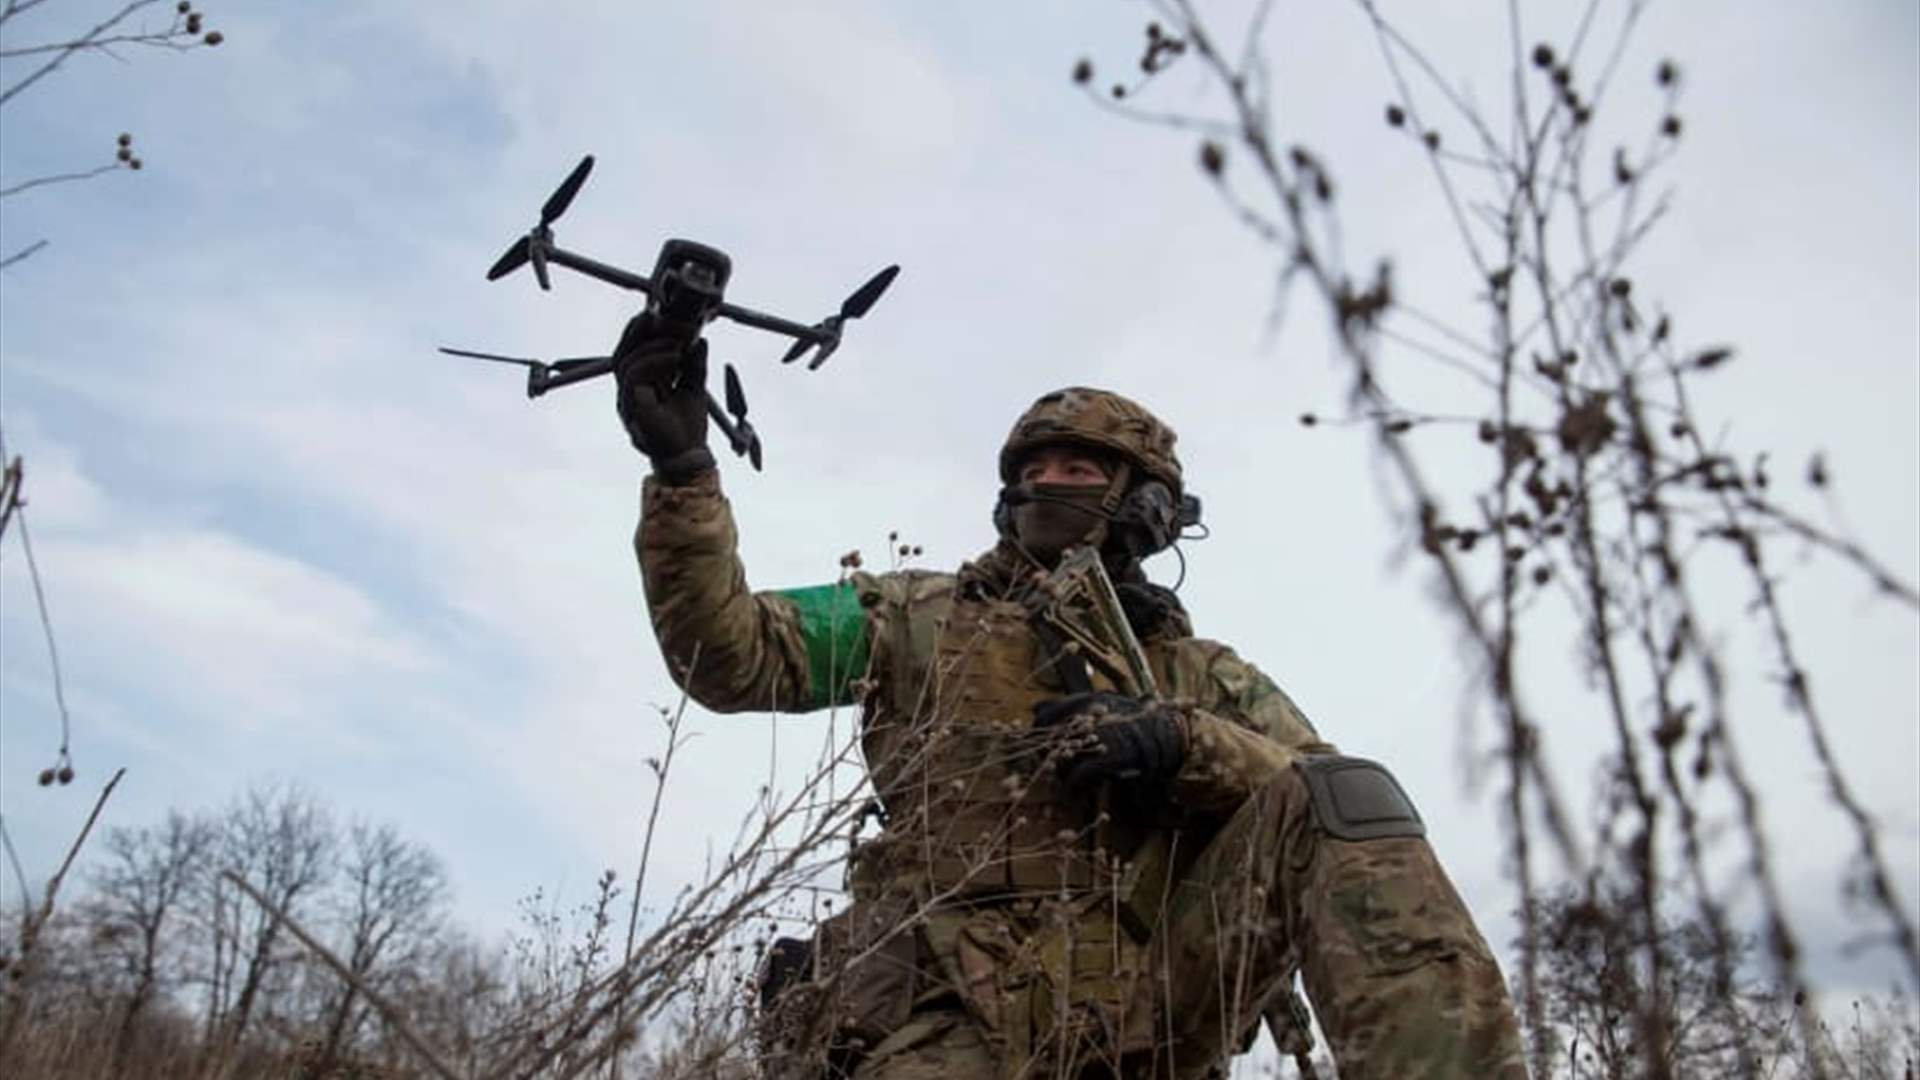 Ukrainian drone kills two in Russian border region